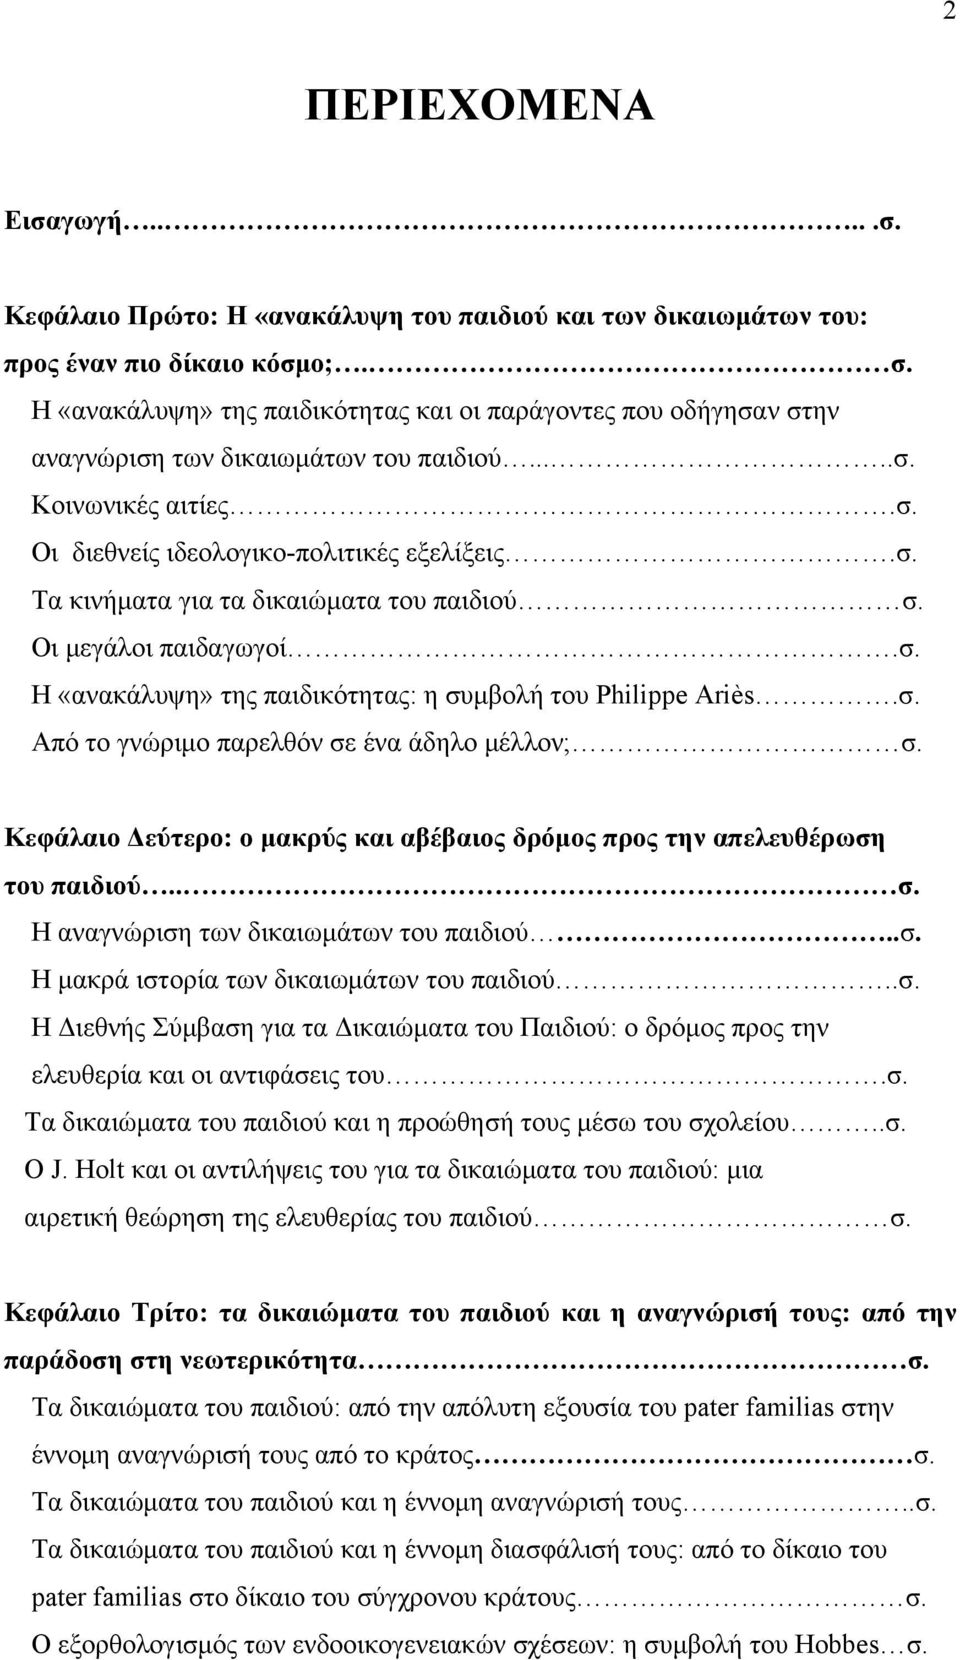 Οι μεγάλοι παιδαγωγοί.σ. Η «ανακάλυψη» της παιδικότητας: η συμβολή του Philippe Ariès.σ. Από το γνώριμο παρελθόν σε ένα άδηλο μέλλον; σ.